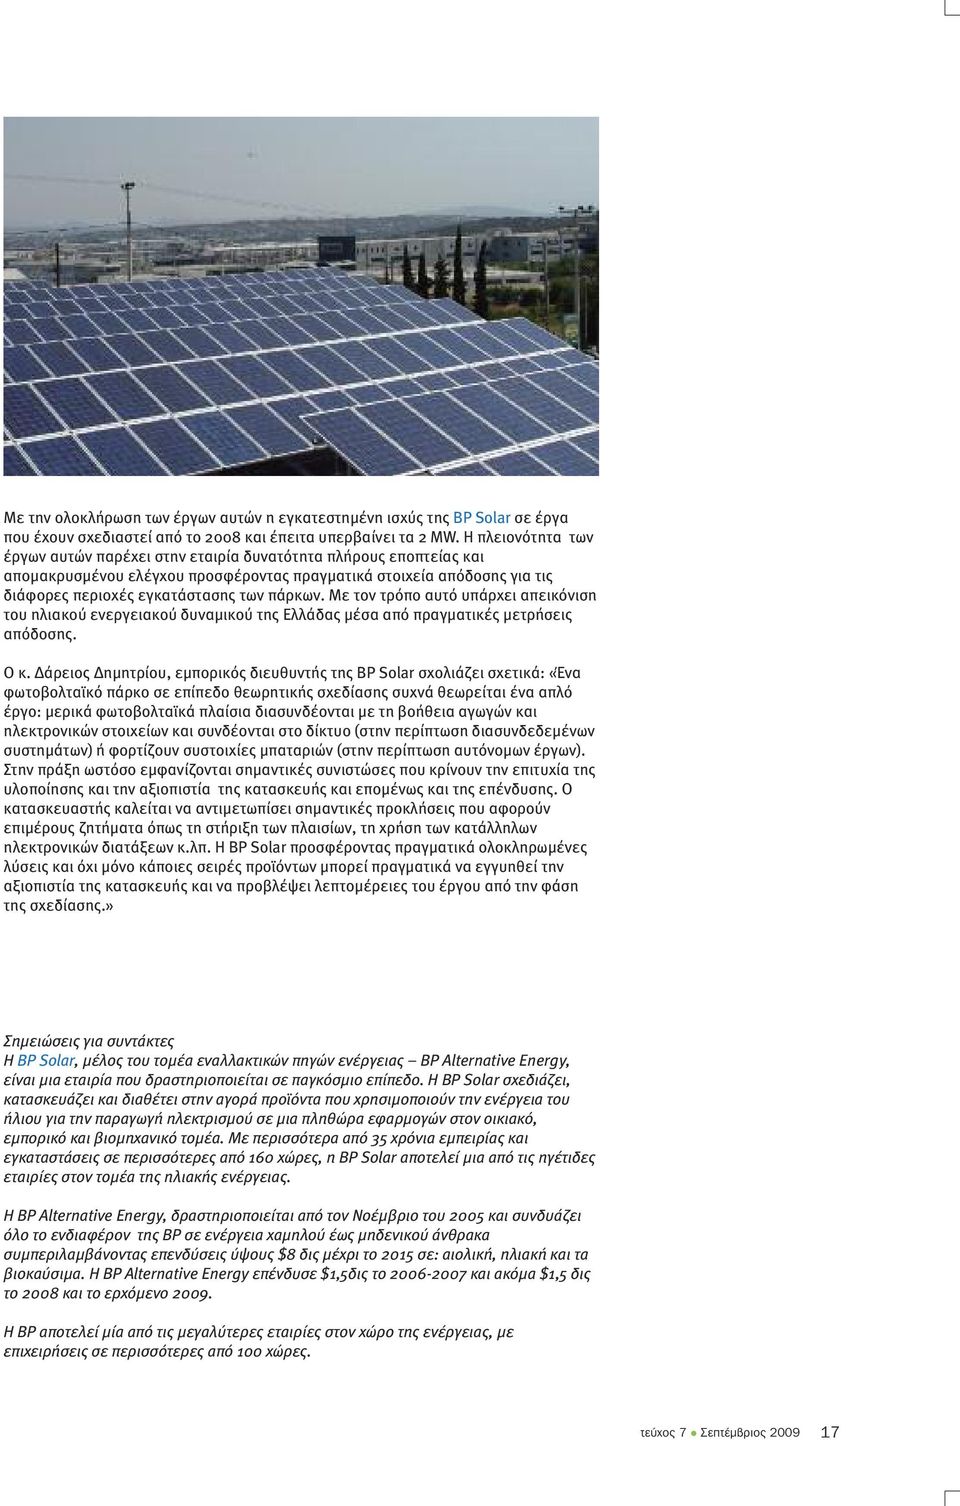 Με τον τρόπο αυτό υπάρχει απεικόνιση του ηλιακού ενεργειακού δυναµικού της Ελλάδας µέσα από πραγµατικές µετρήσεις απόδοσης. Ο κ.